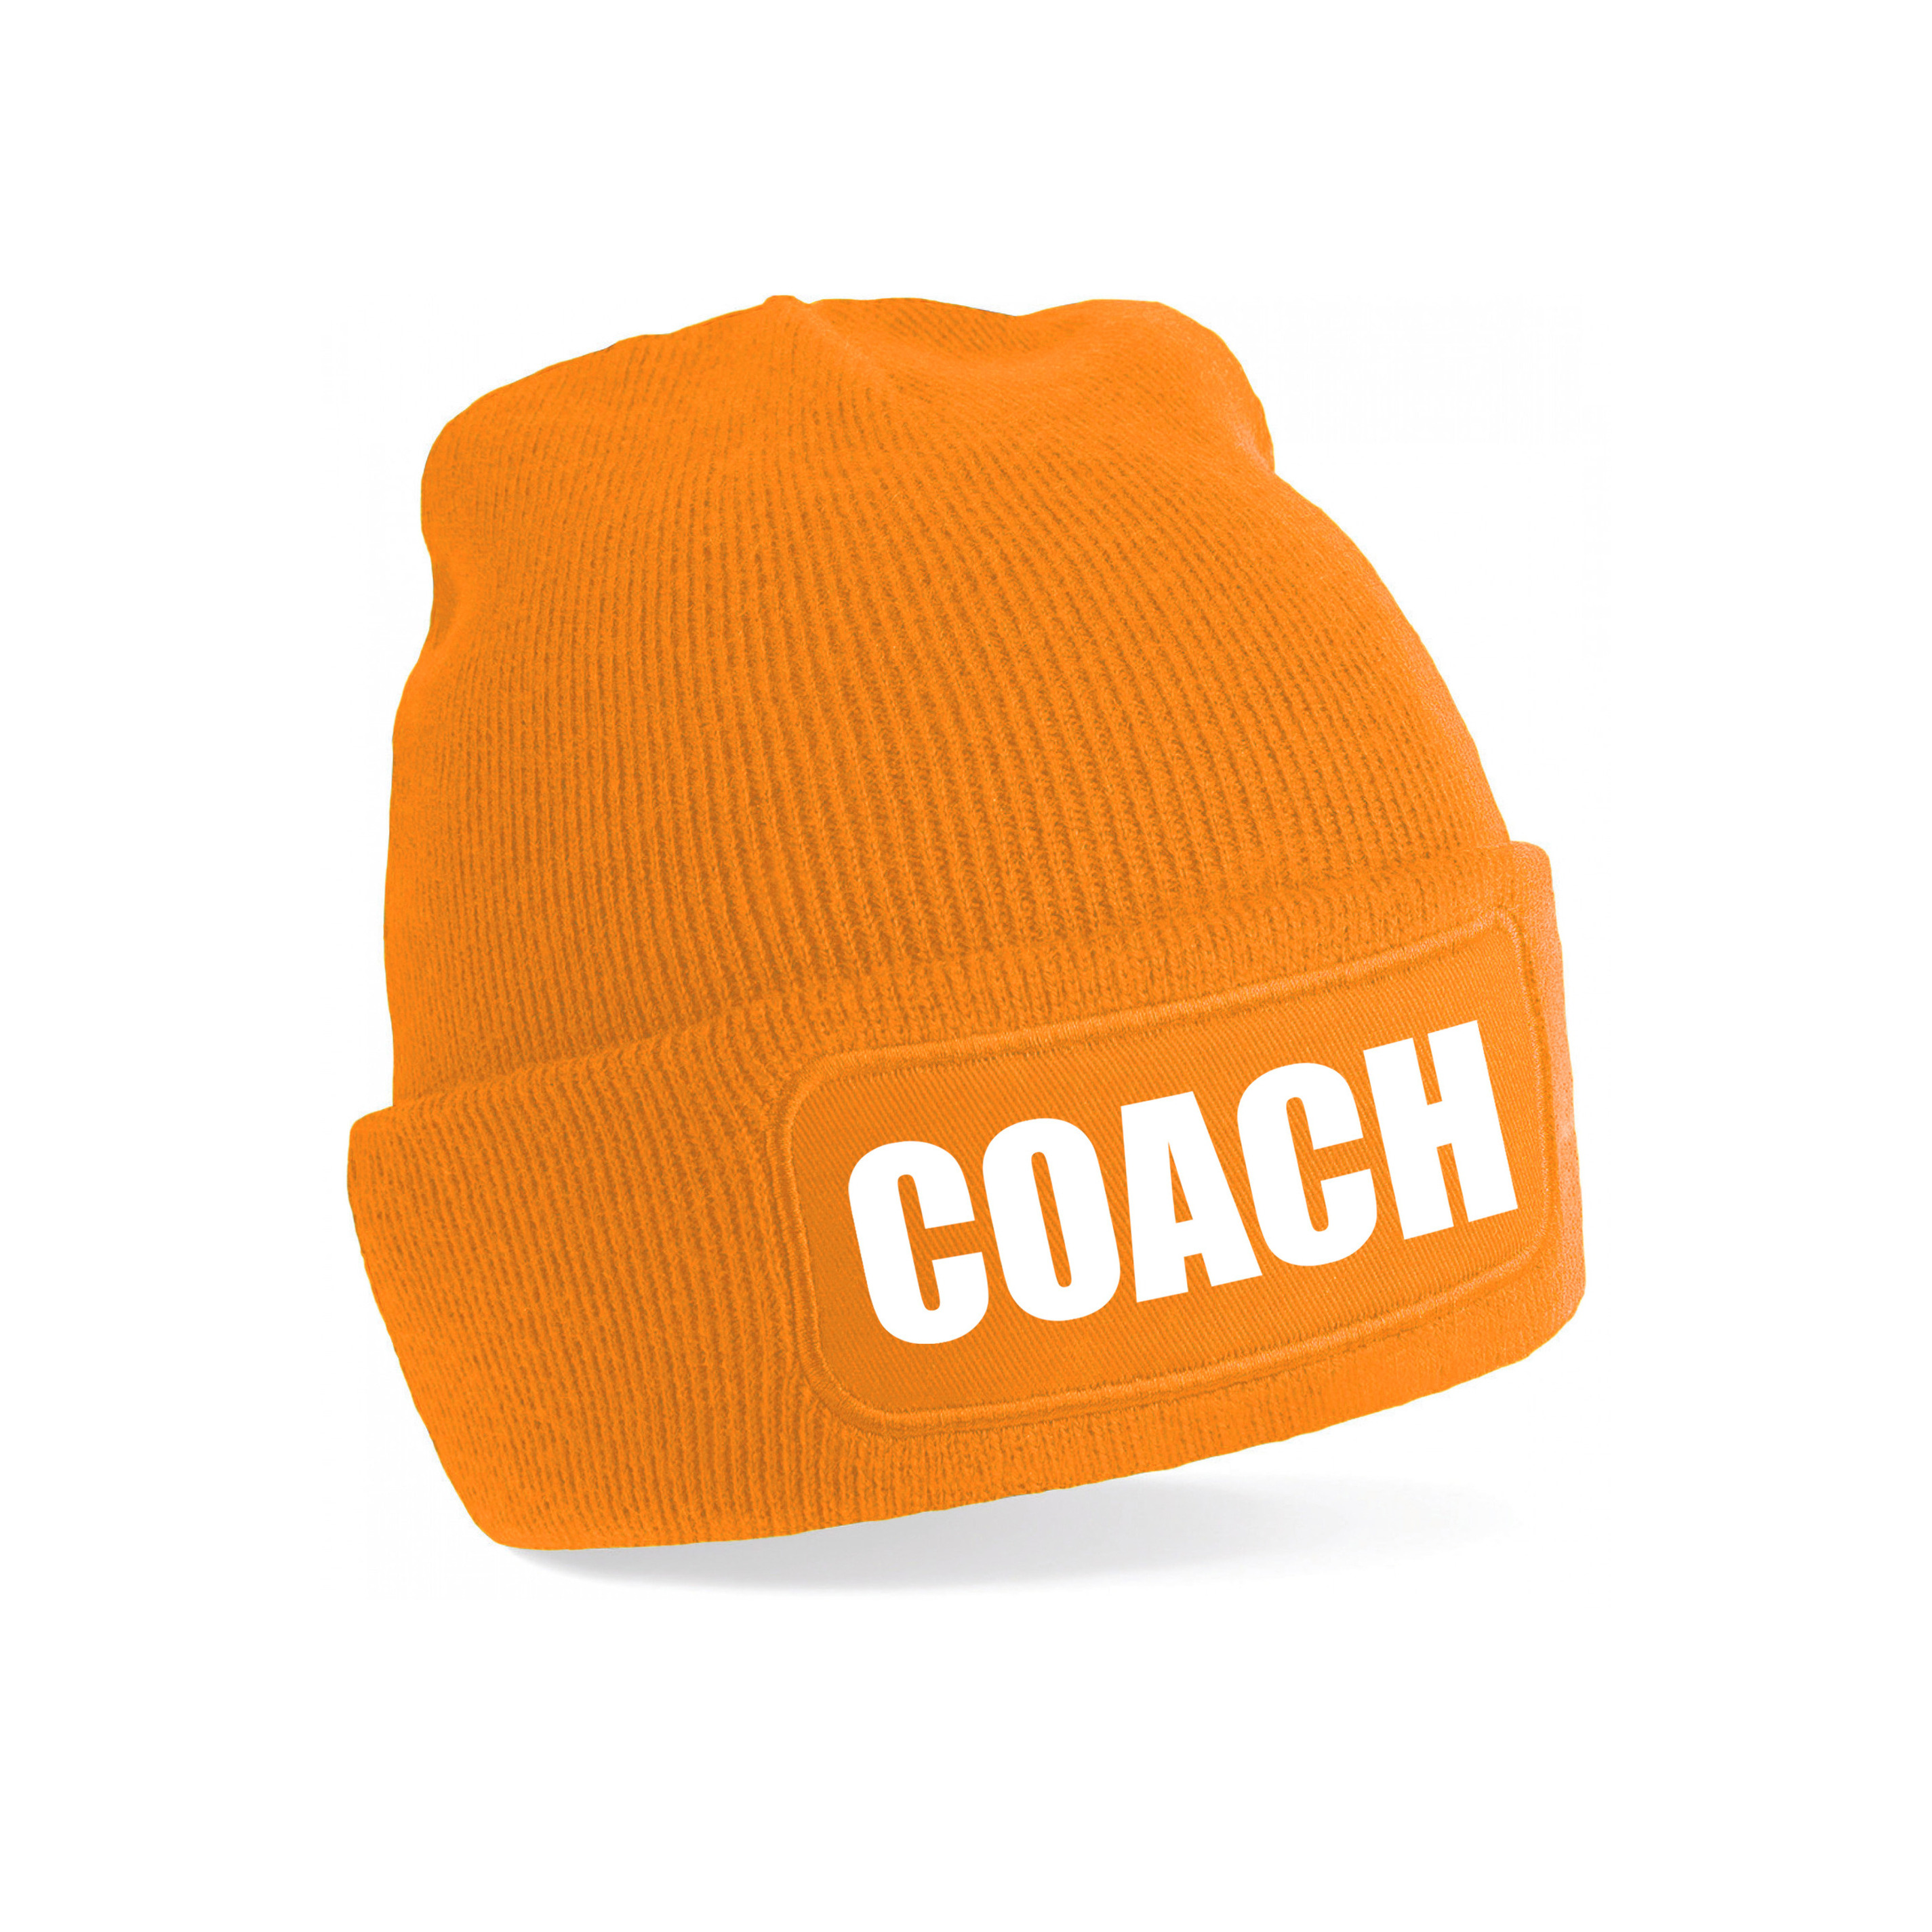 Coach muts voor volwassenen oranje trainer-coach wintermuts beanie one size unisex